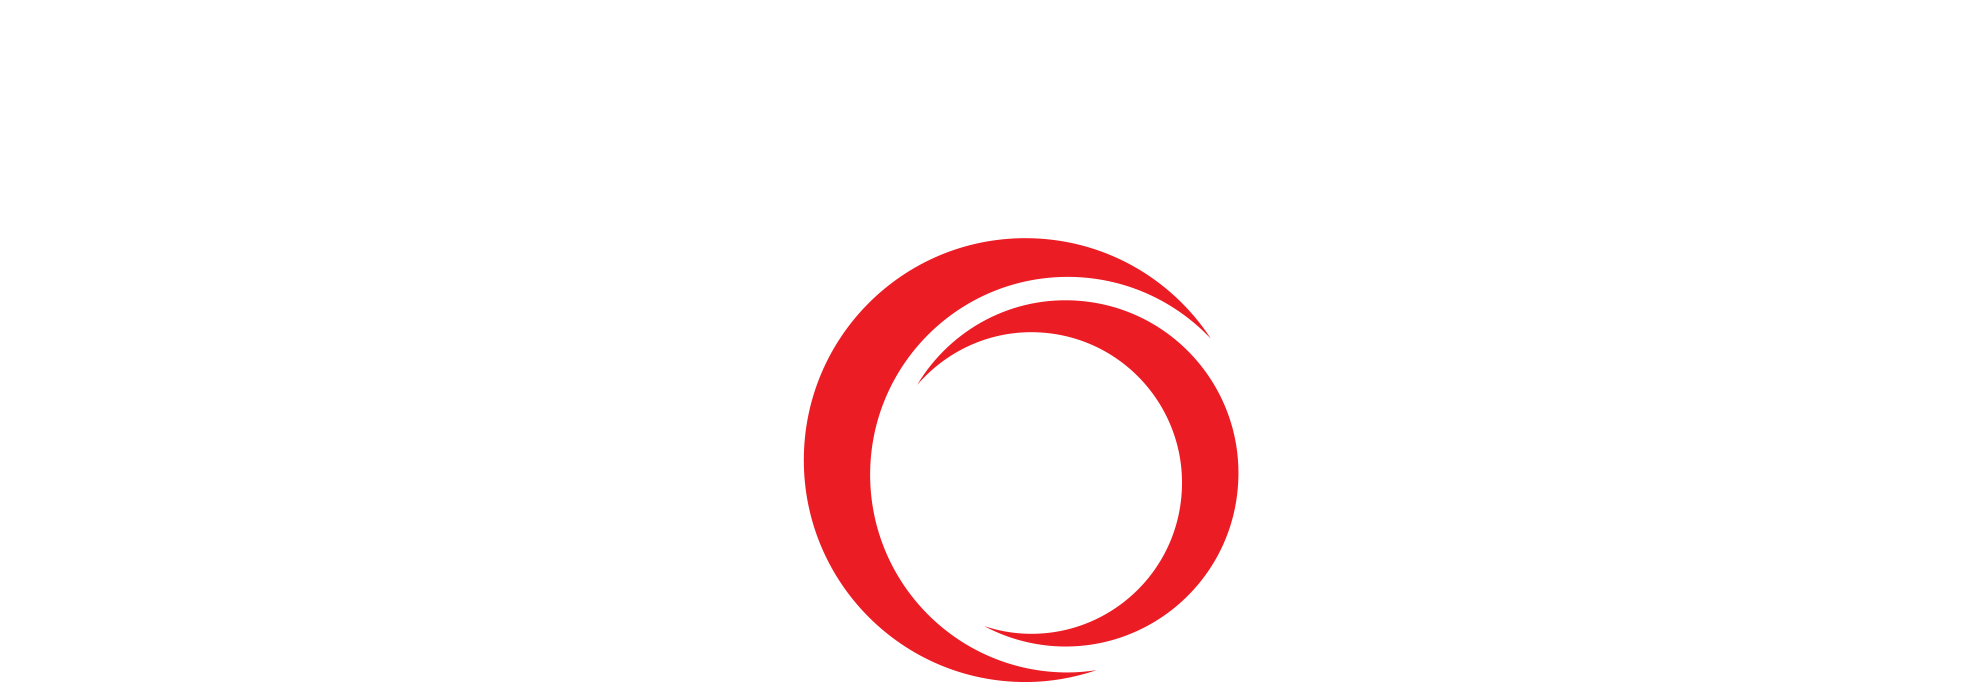 Logo Hyundai Mobis.